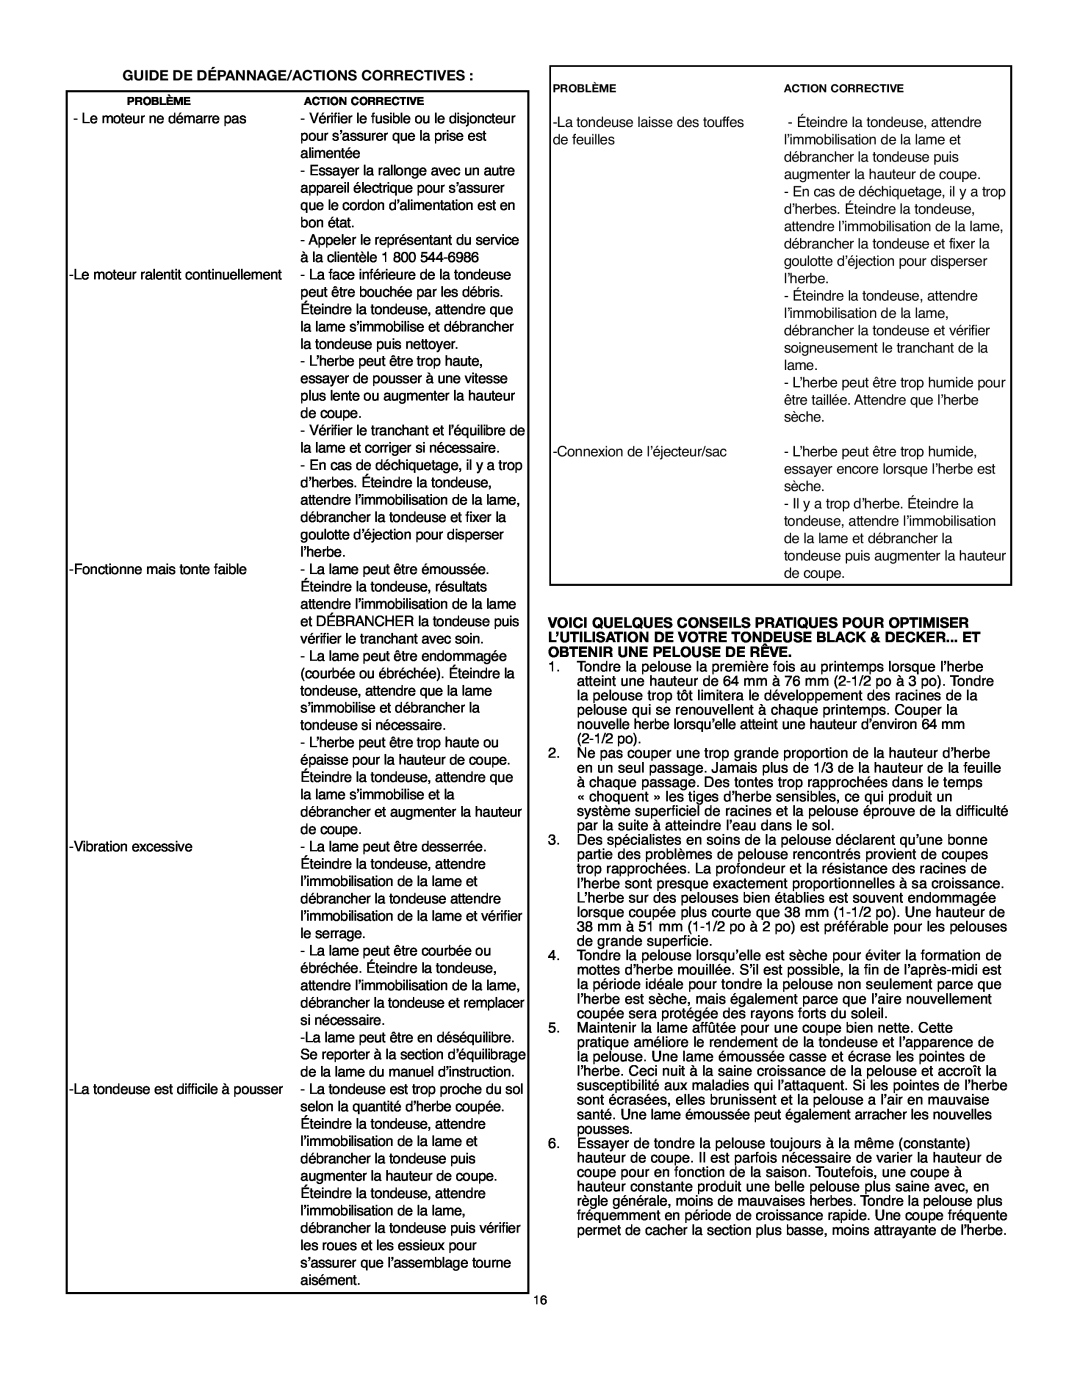 Black & Decker MM675 instruction manual Guide De Dépannage/Actions Correctives, Vérifier le tranchant et l’équilibre de 